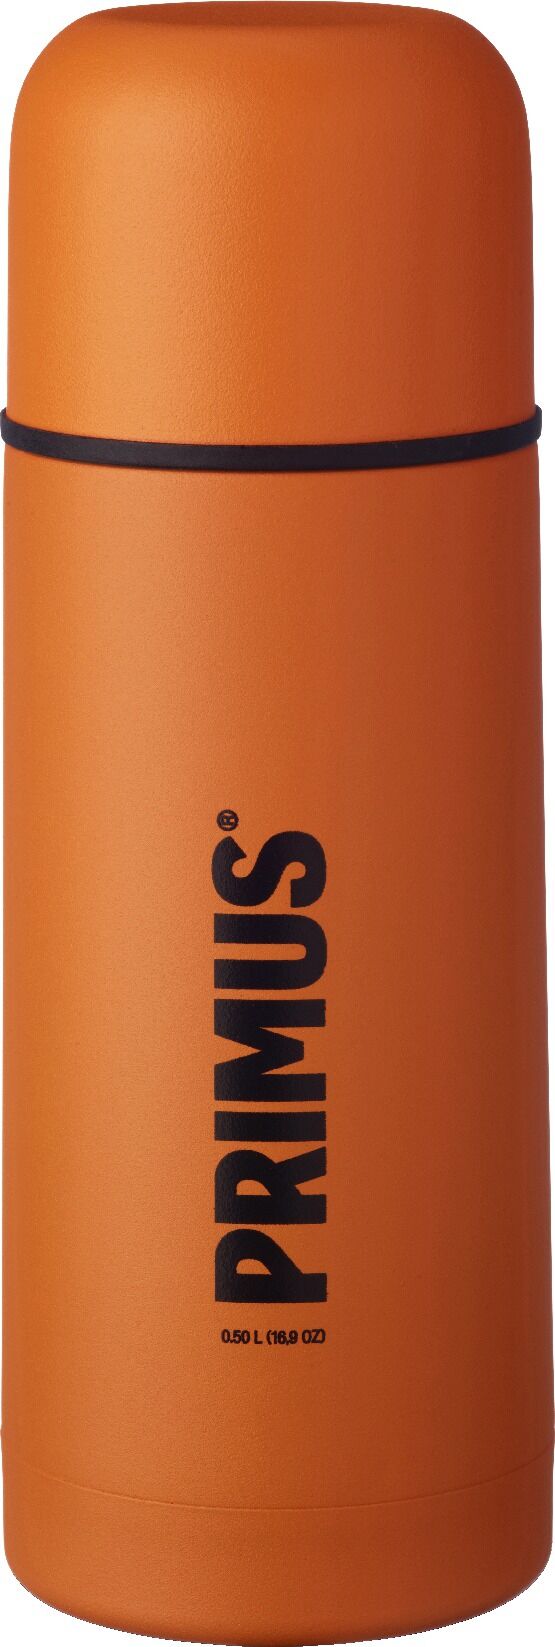 Primus Vacuum Bottle 0.5L termos Orange 2018